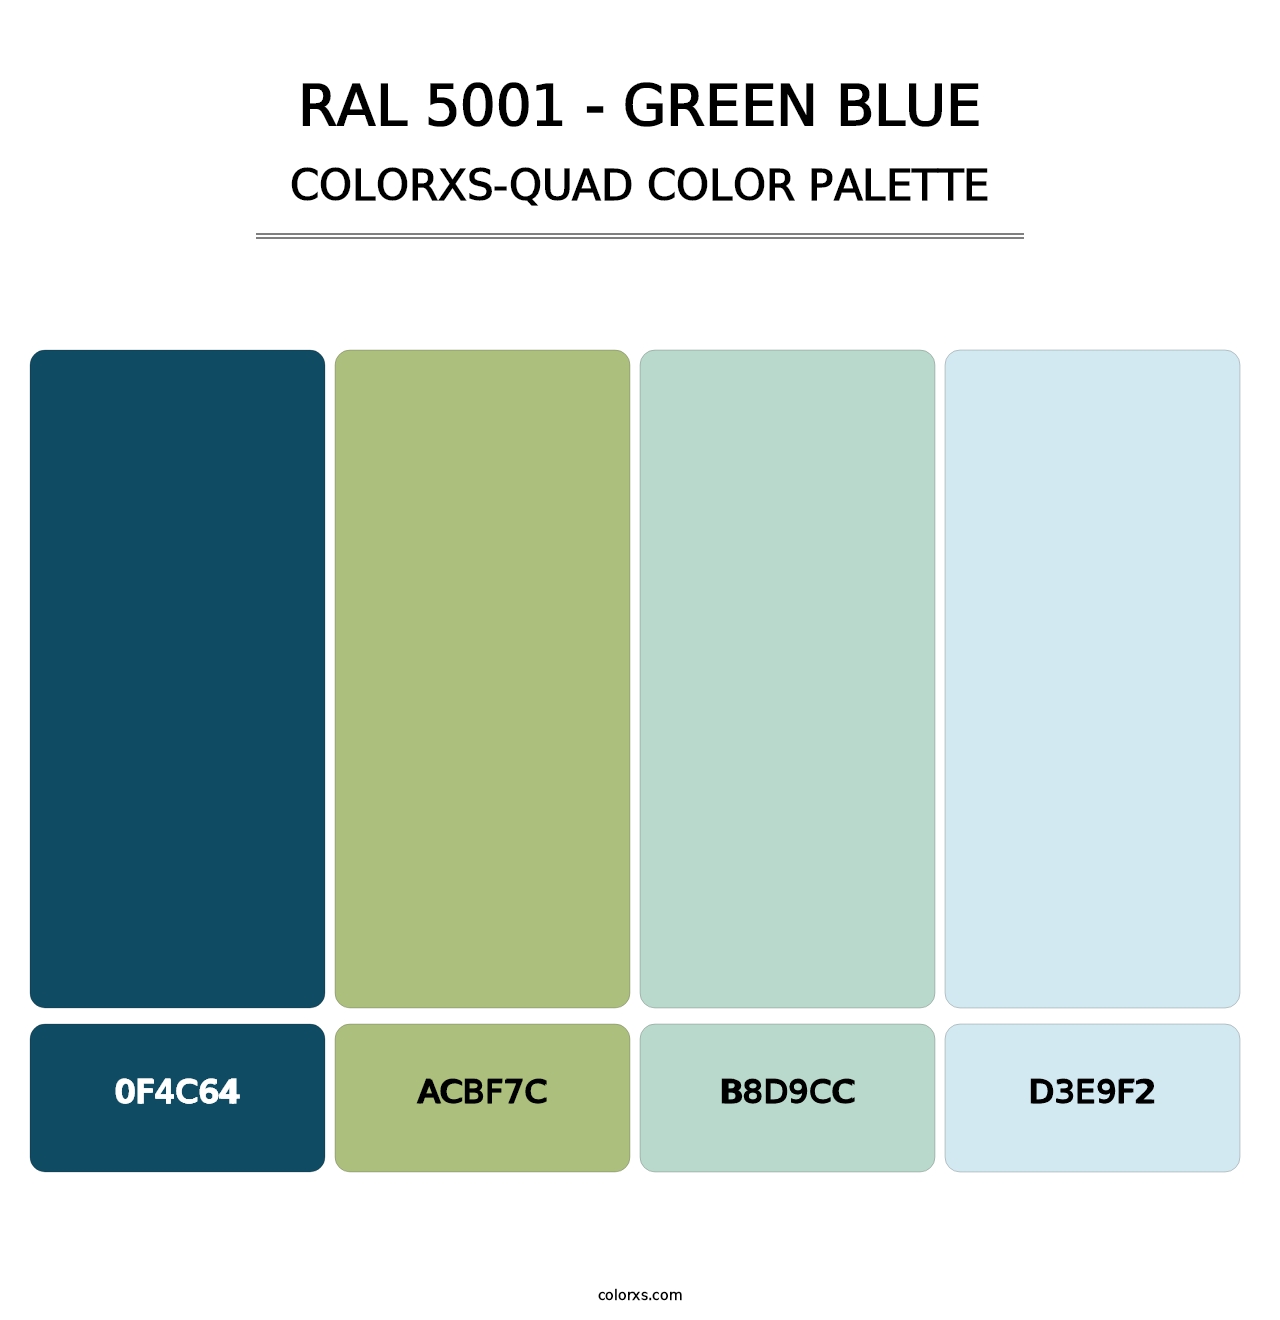 RAL 5001 - Green Blue - Colorxs Quad Palette